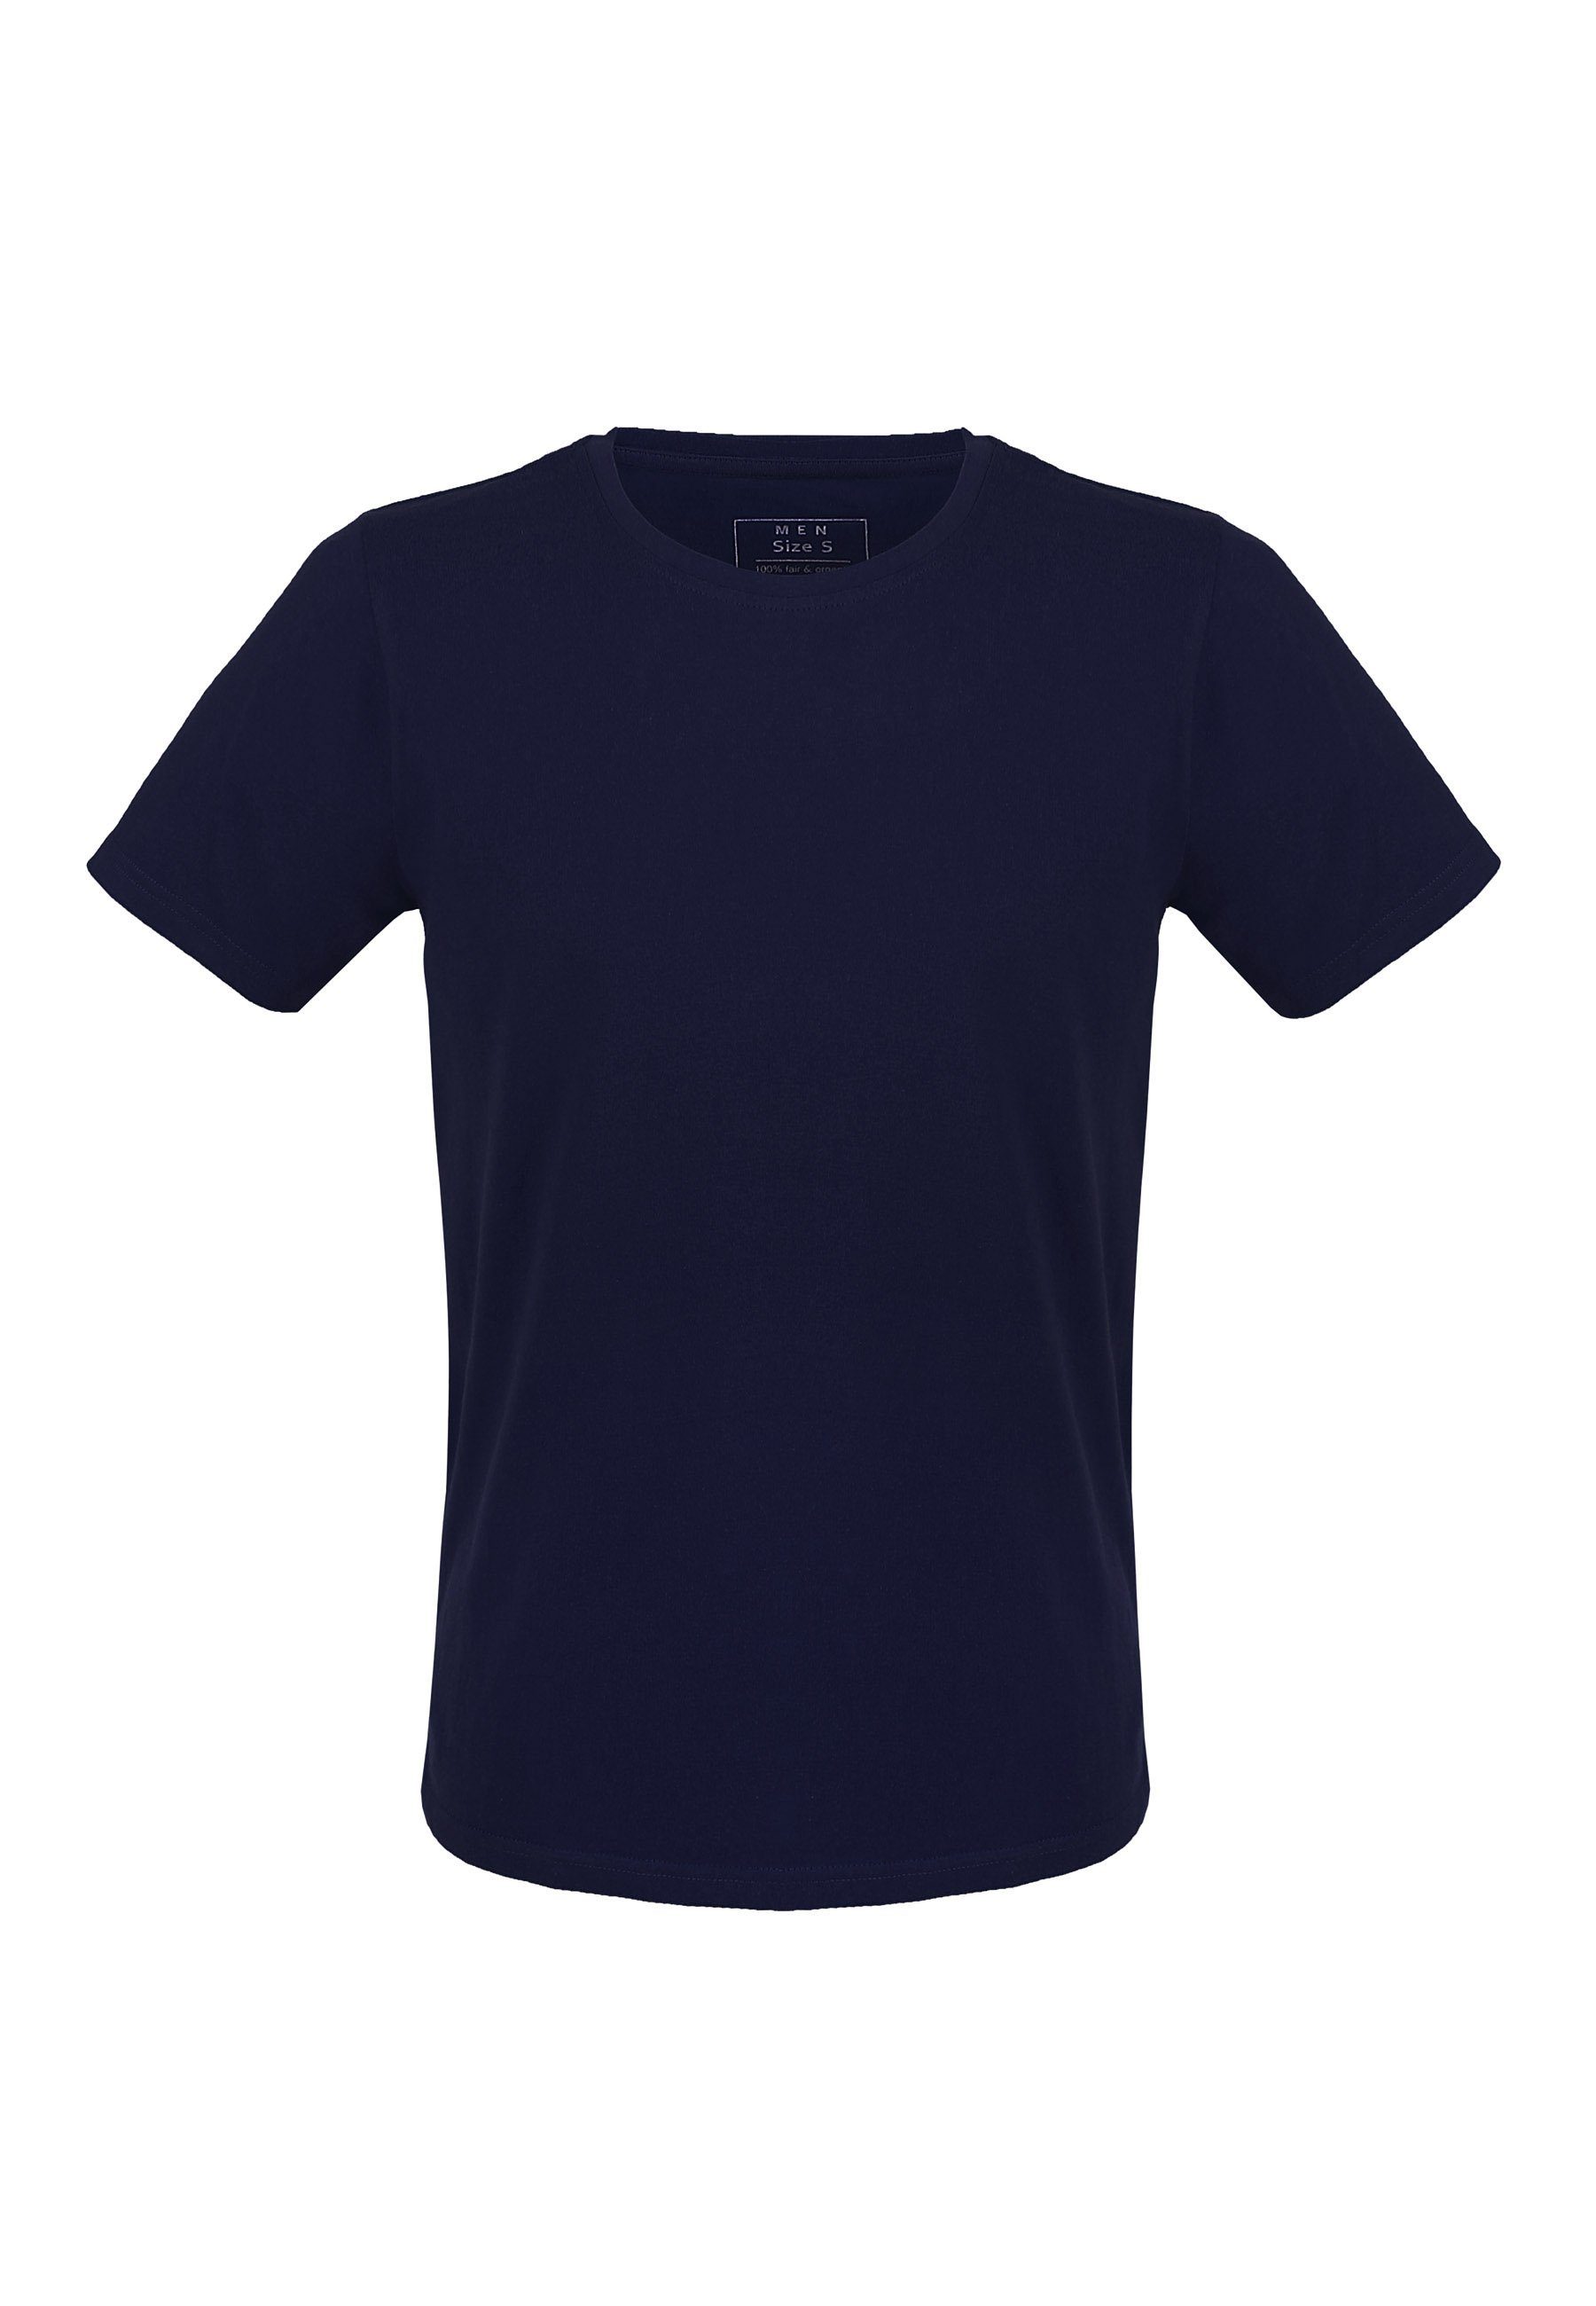 MELA Kurzarmshirt navy Basic T-Shirt